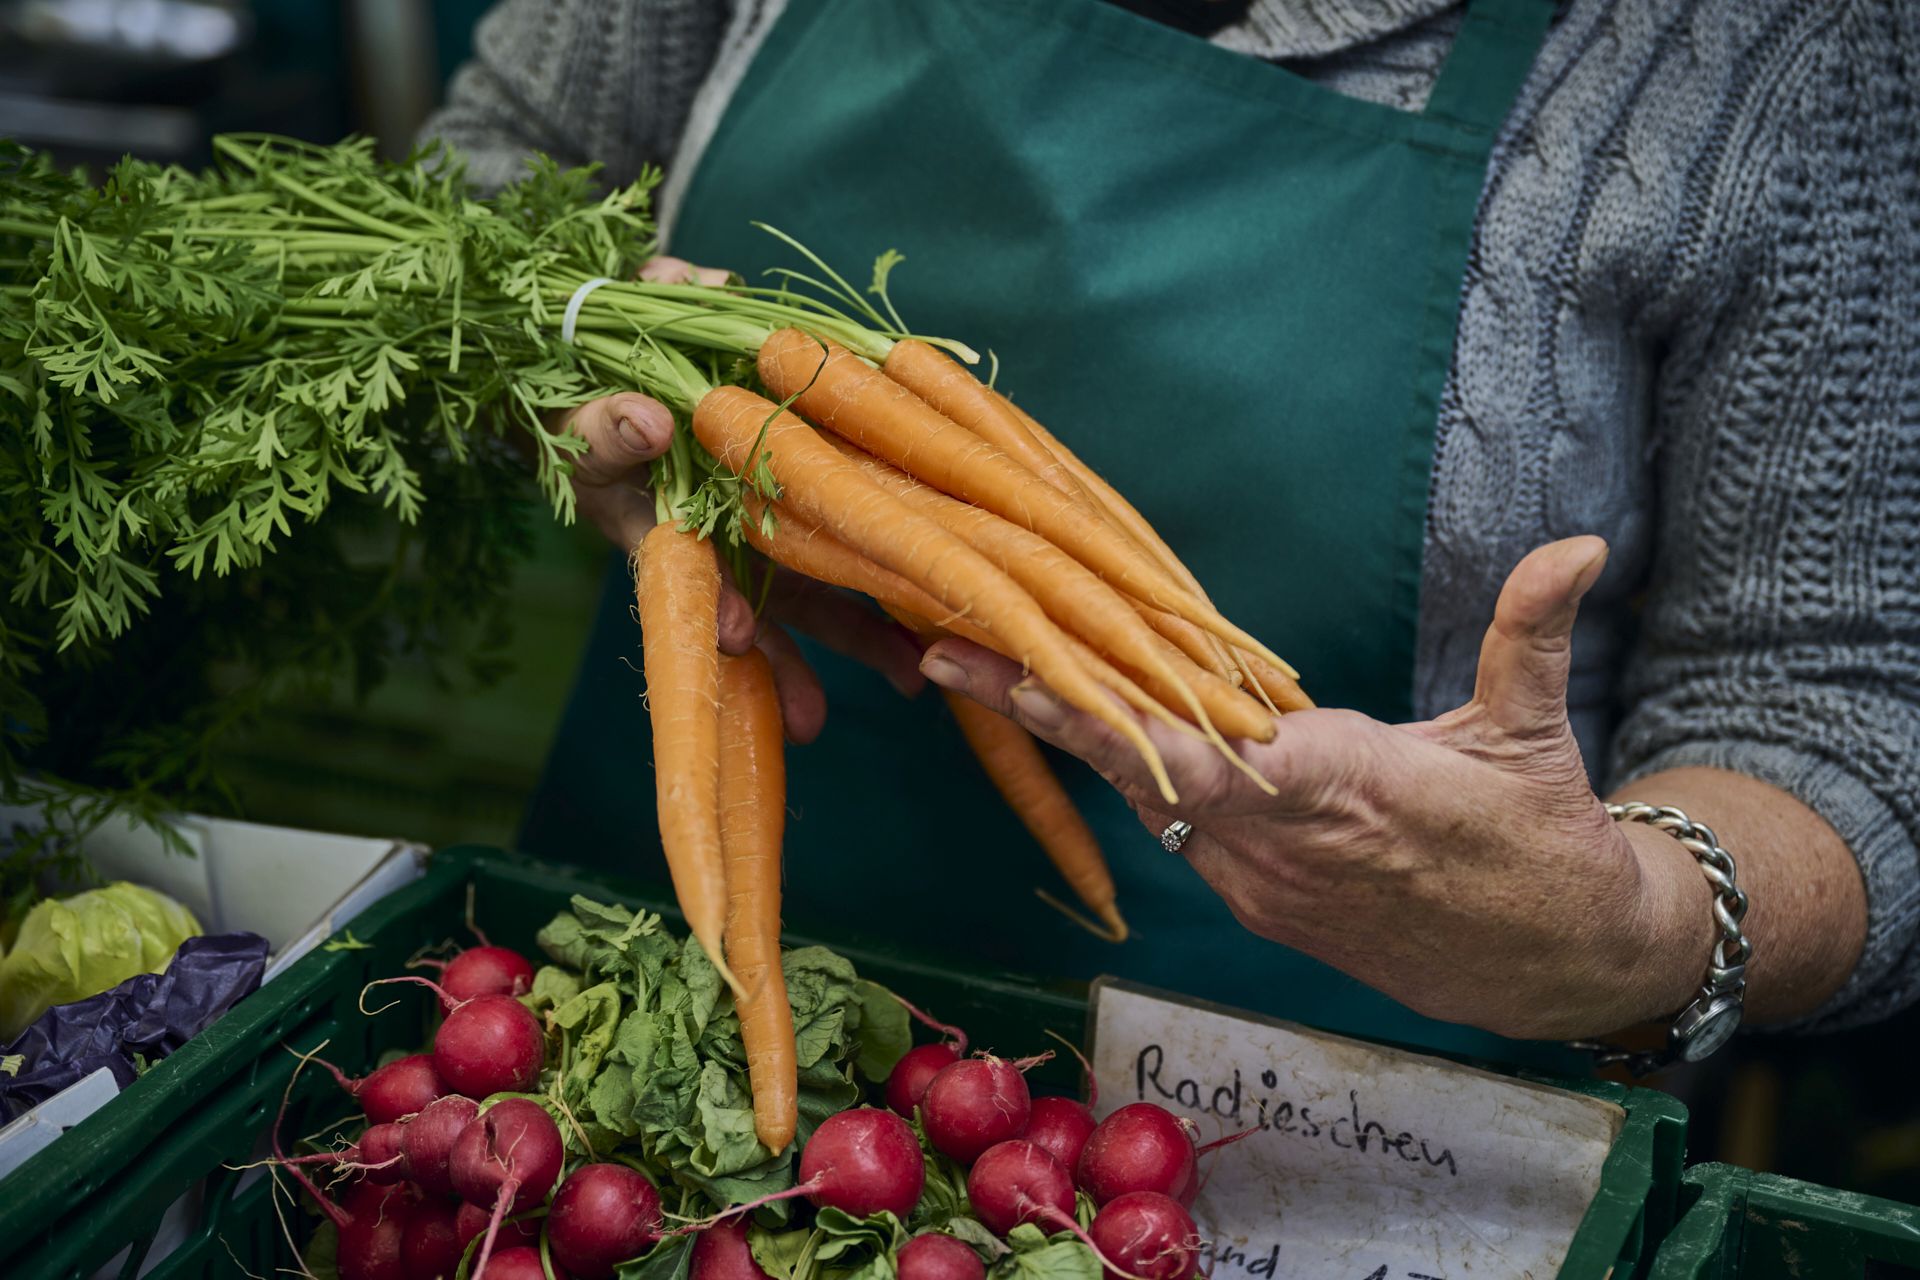 Man sieht die Hände einer Marktfrau. Sie hält einen Bund Karotten in der Hand, vor ihr liegt noch ein Bund Radieschen